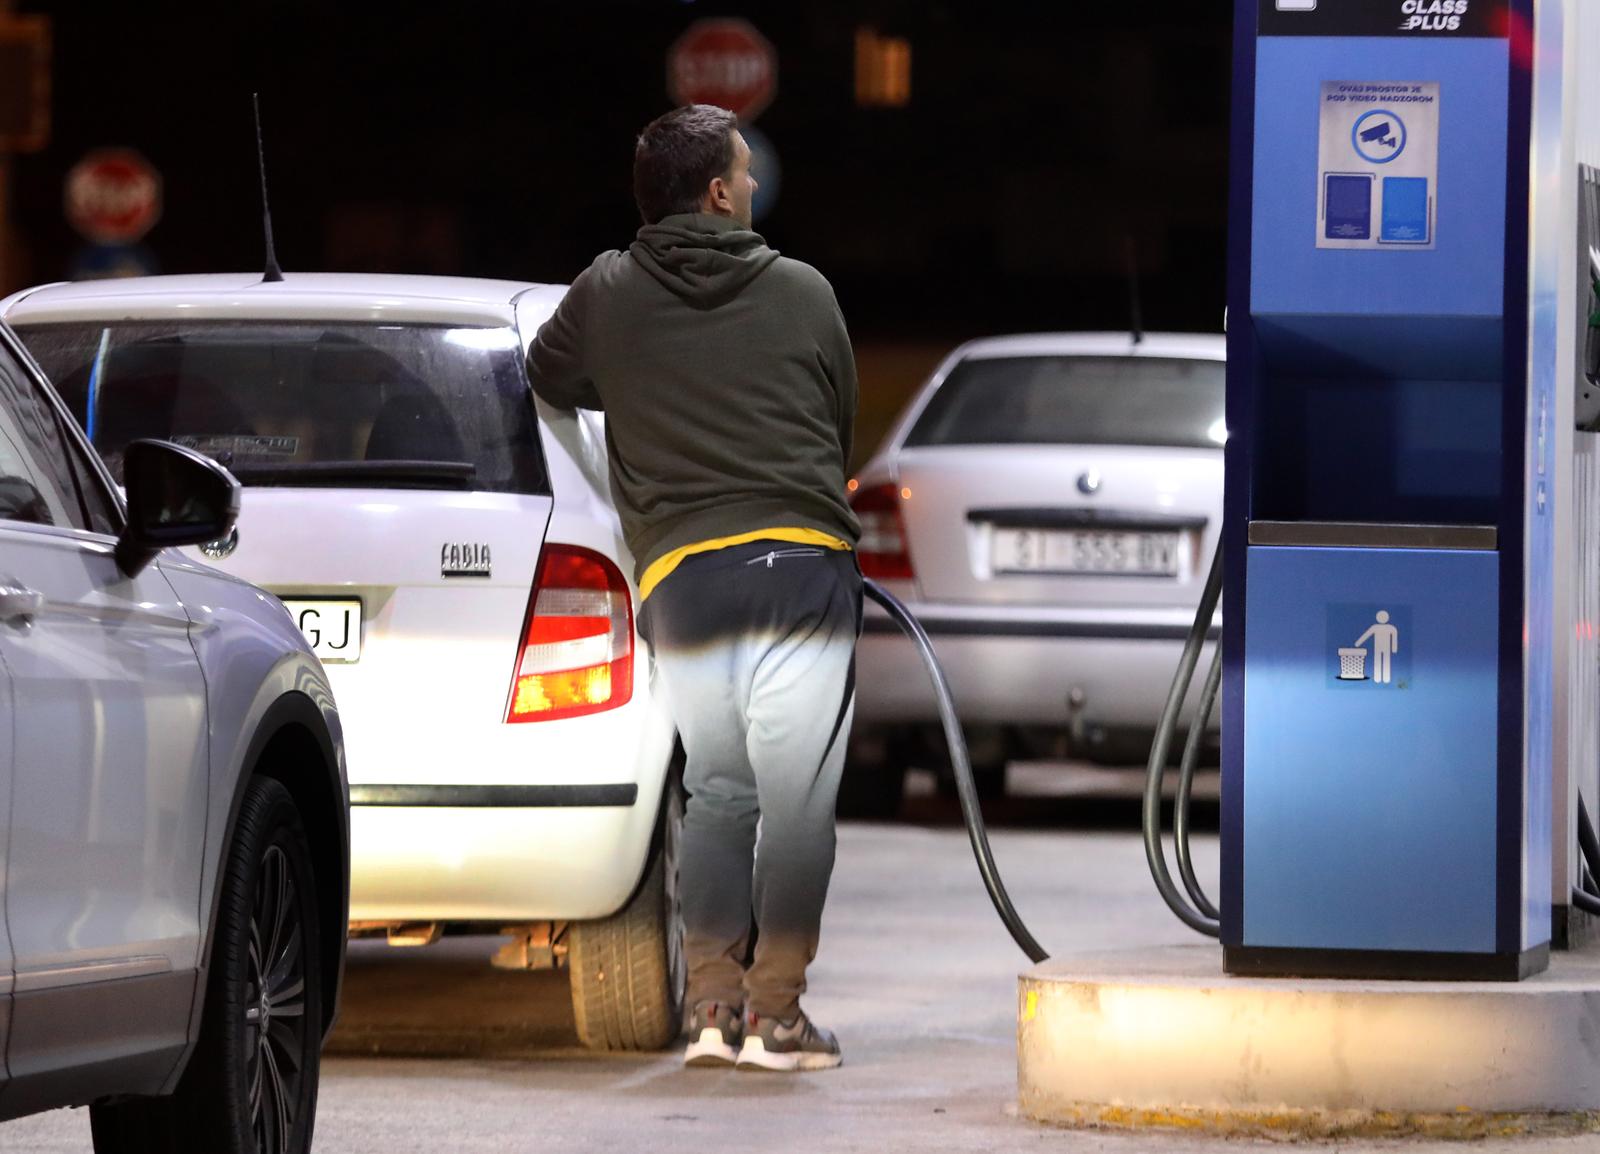 24.10.2022., Sibenik - Velike guzve na benzinskim postajama stvorile su redove pred sutrasnje znacajno povecanje cijena goriva.   Photo: Dusko Jaramaz/PIXSELL